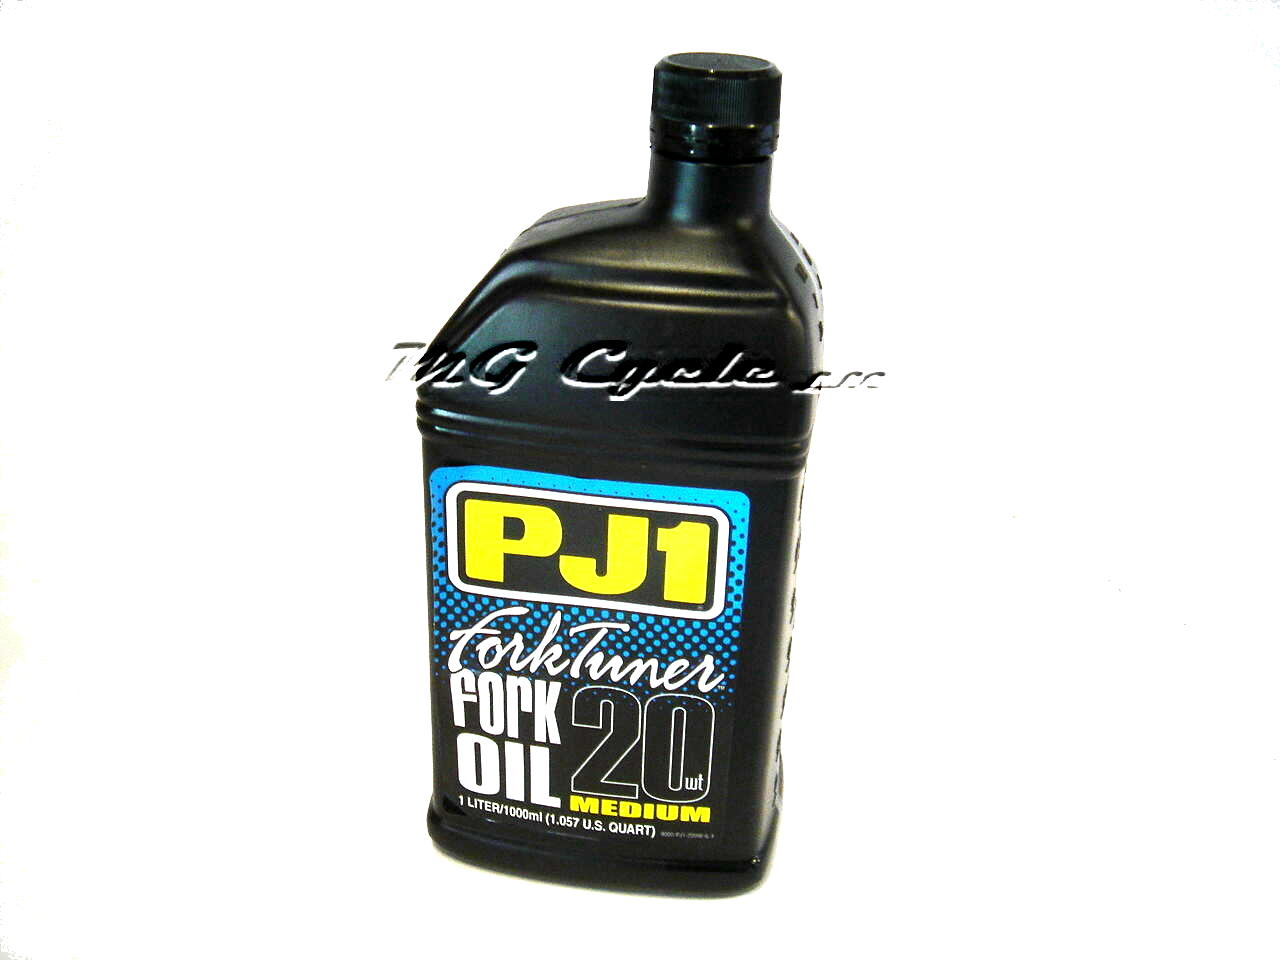 PJ1 Fork Tuner fork oil 20W medium, 1 liter bottle - Click Image to Close